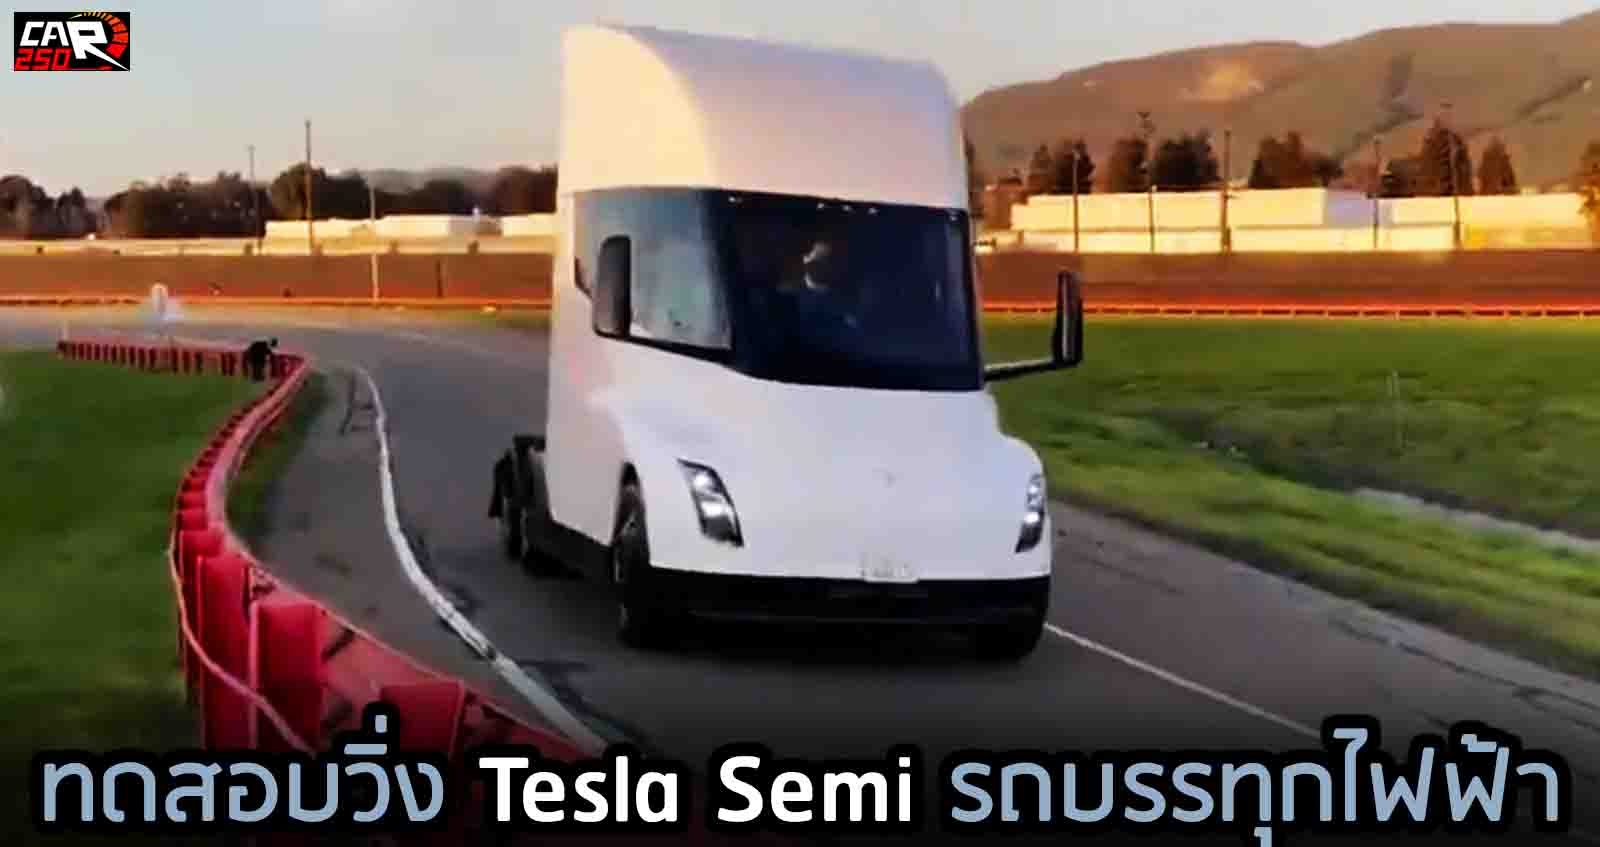 (VDO) ทดสอบวิ่ง Tesla Semi รถบรรทุกไฟฟ้าขับขี่อัตโนมัติ